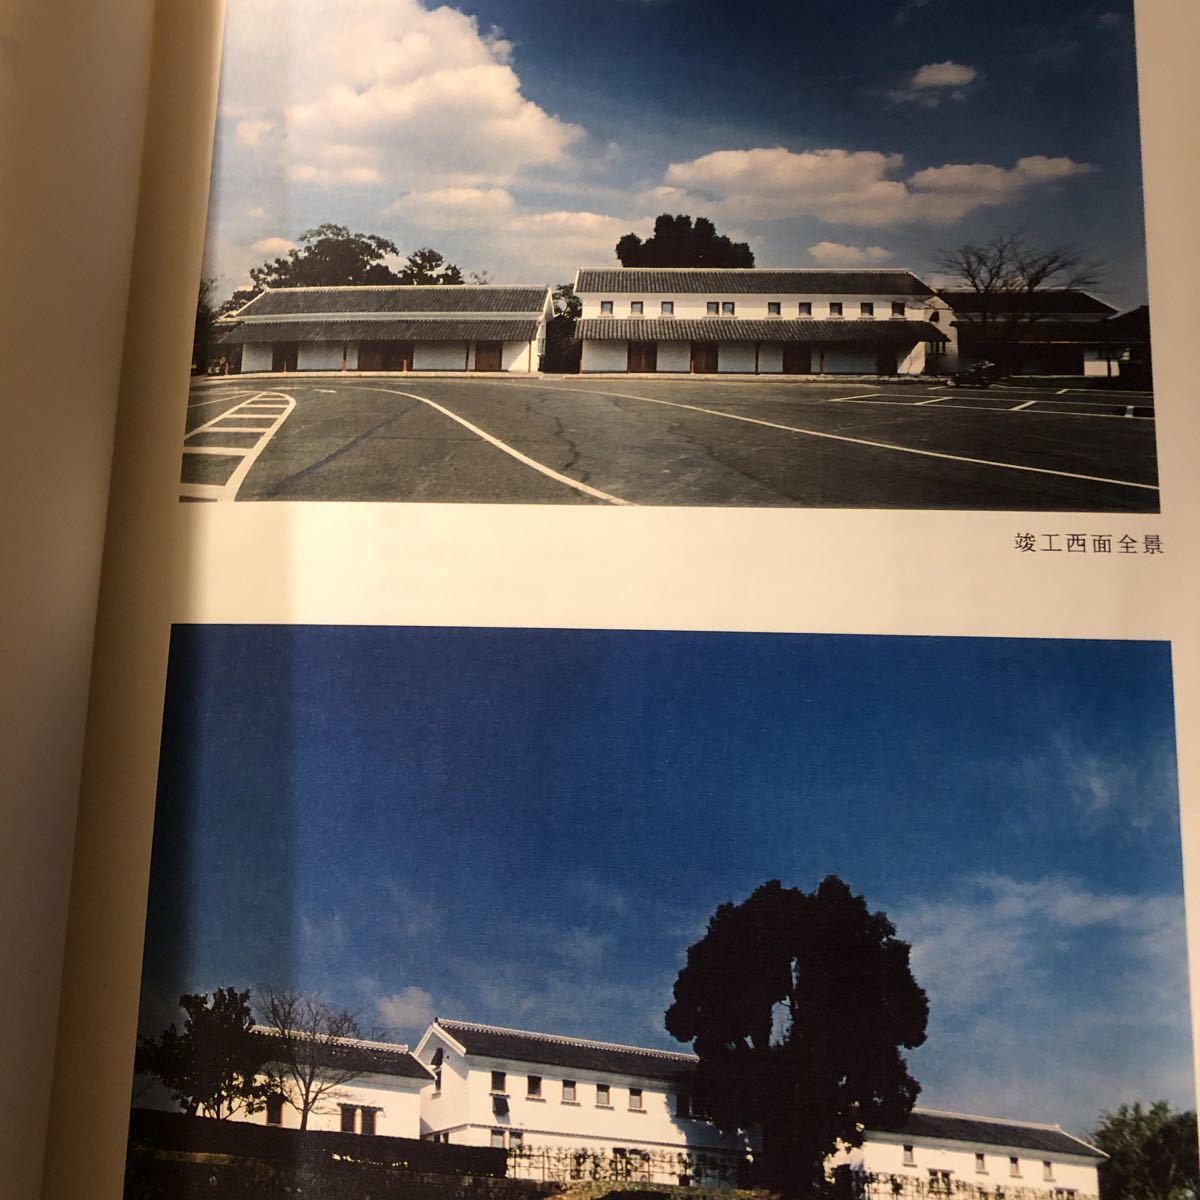 熊本城二の丸休息所・売店改修工事 報告書 平成5年 熊本市_画像3